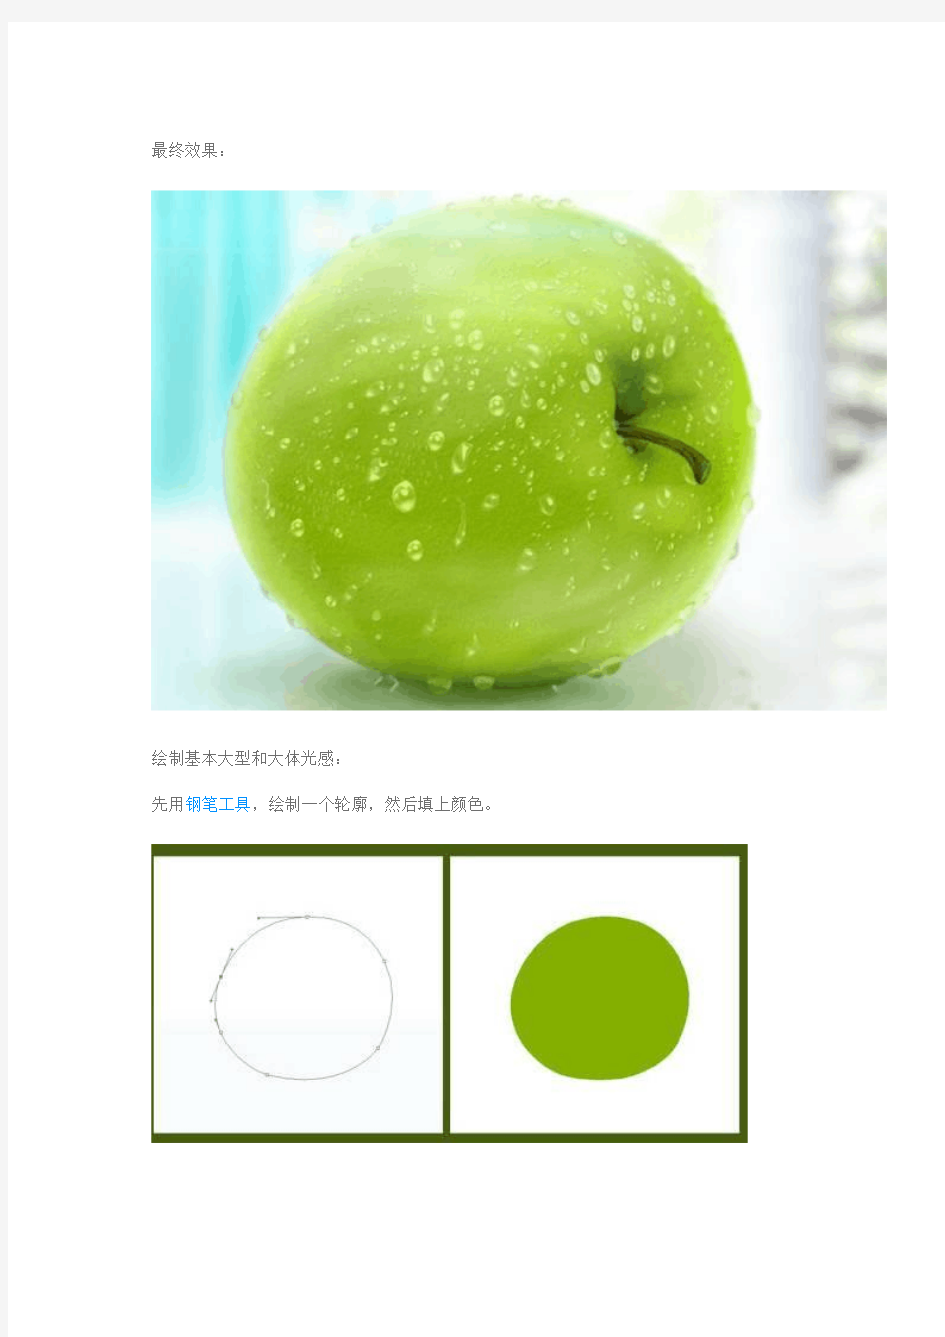 用PS绘制一个逼真的苹果